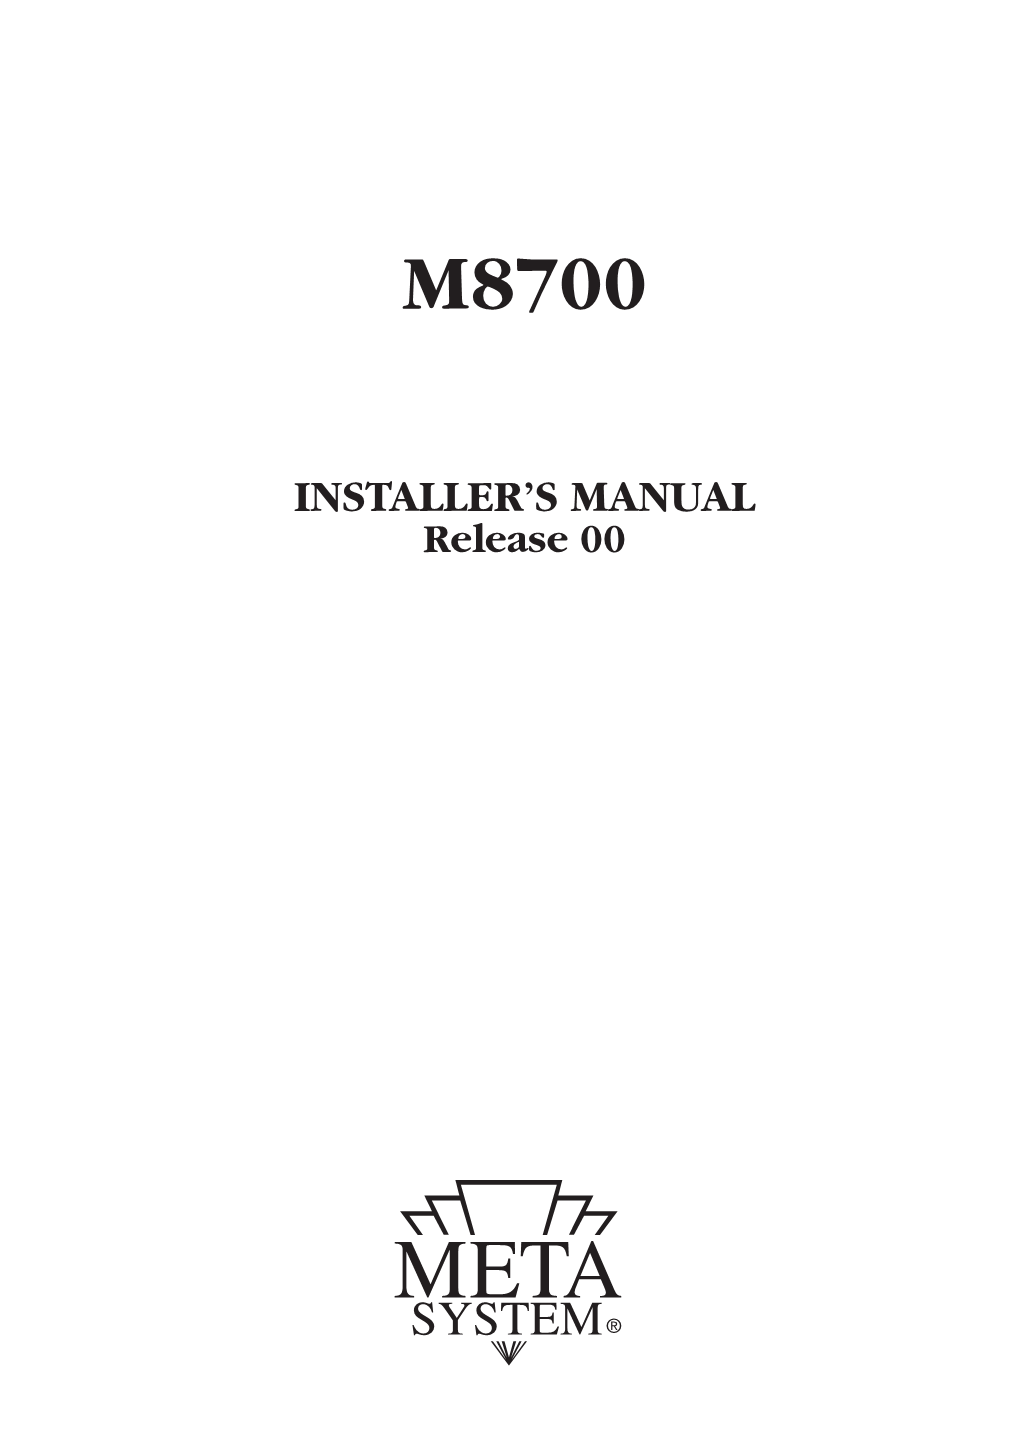 Installer's Manual